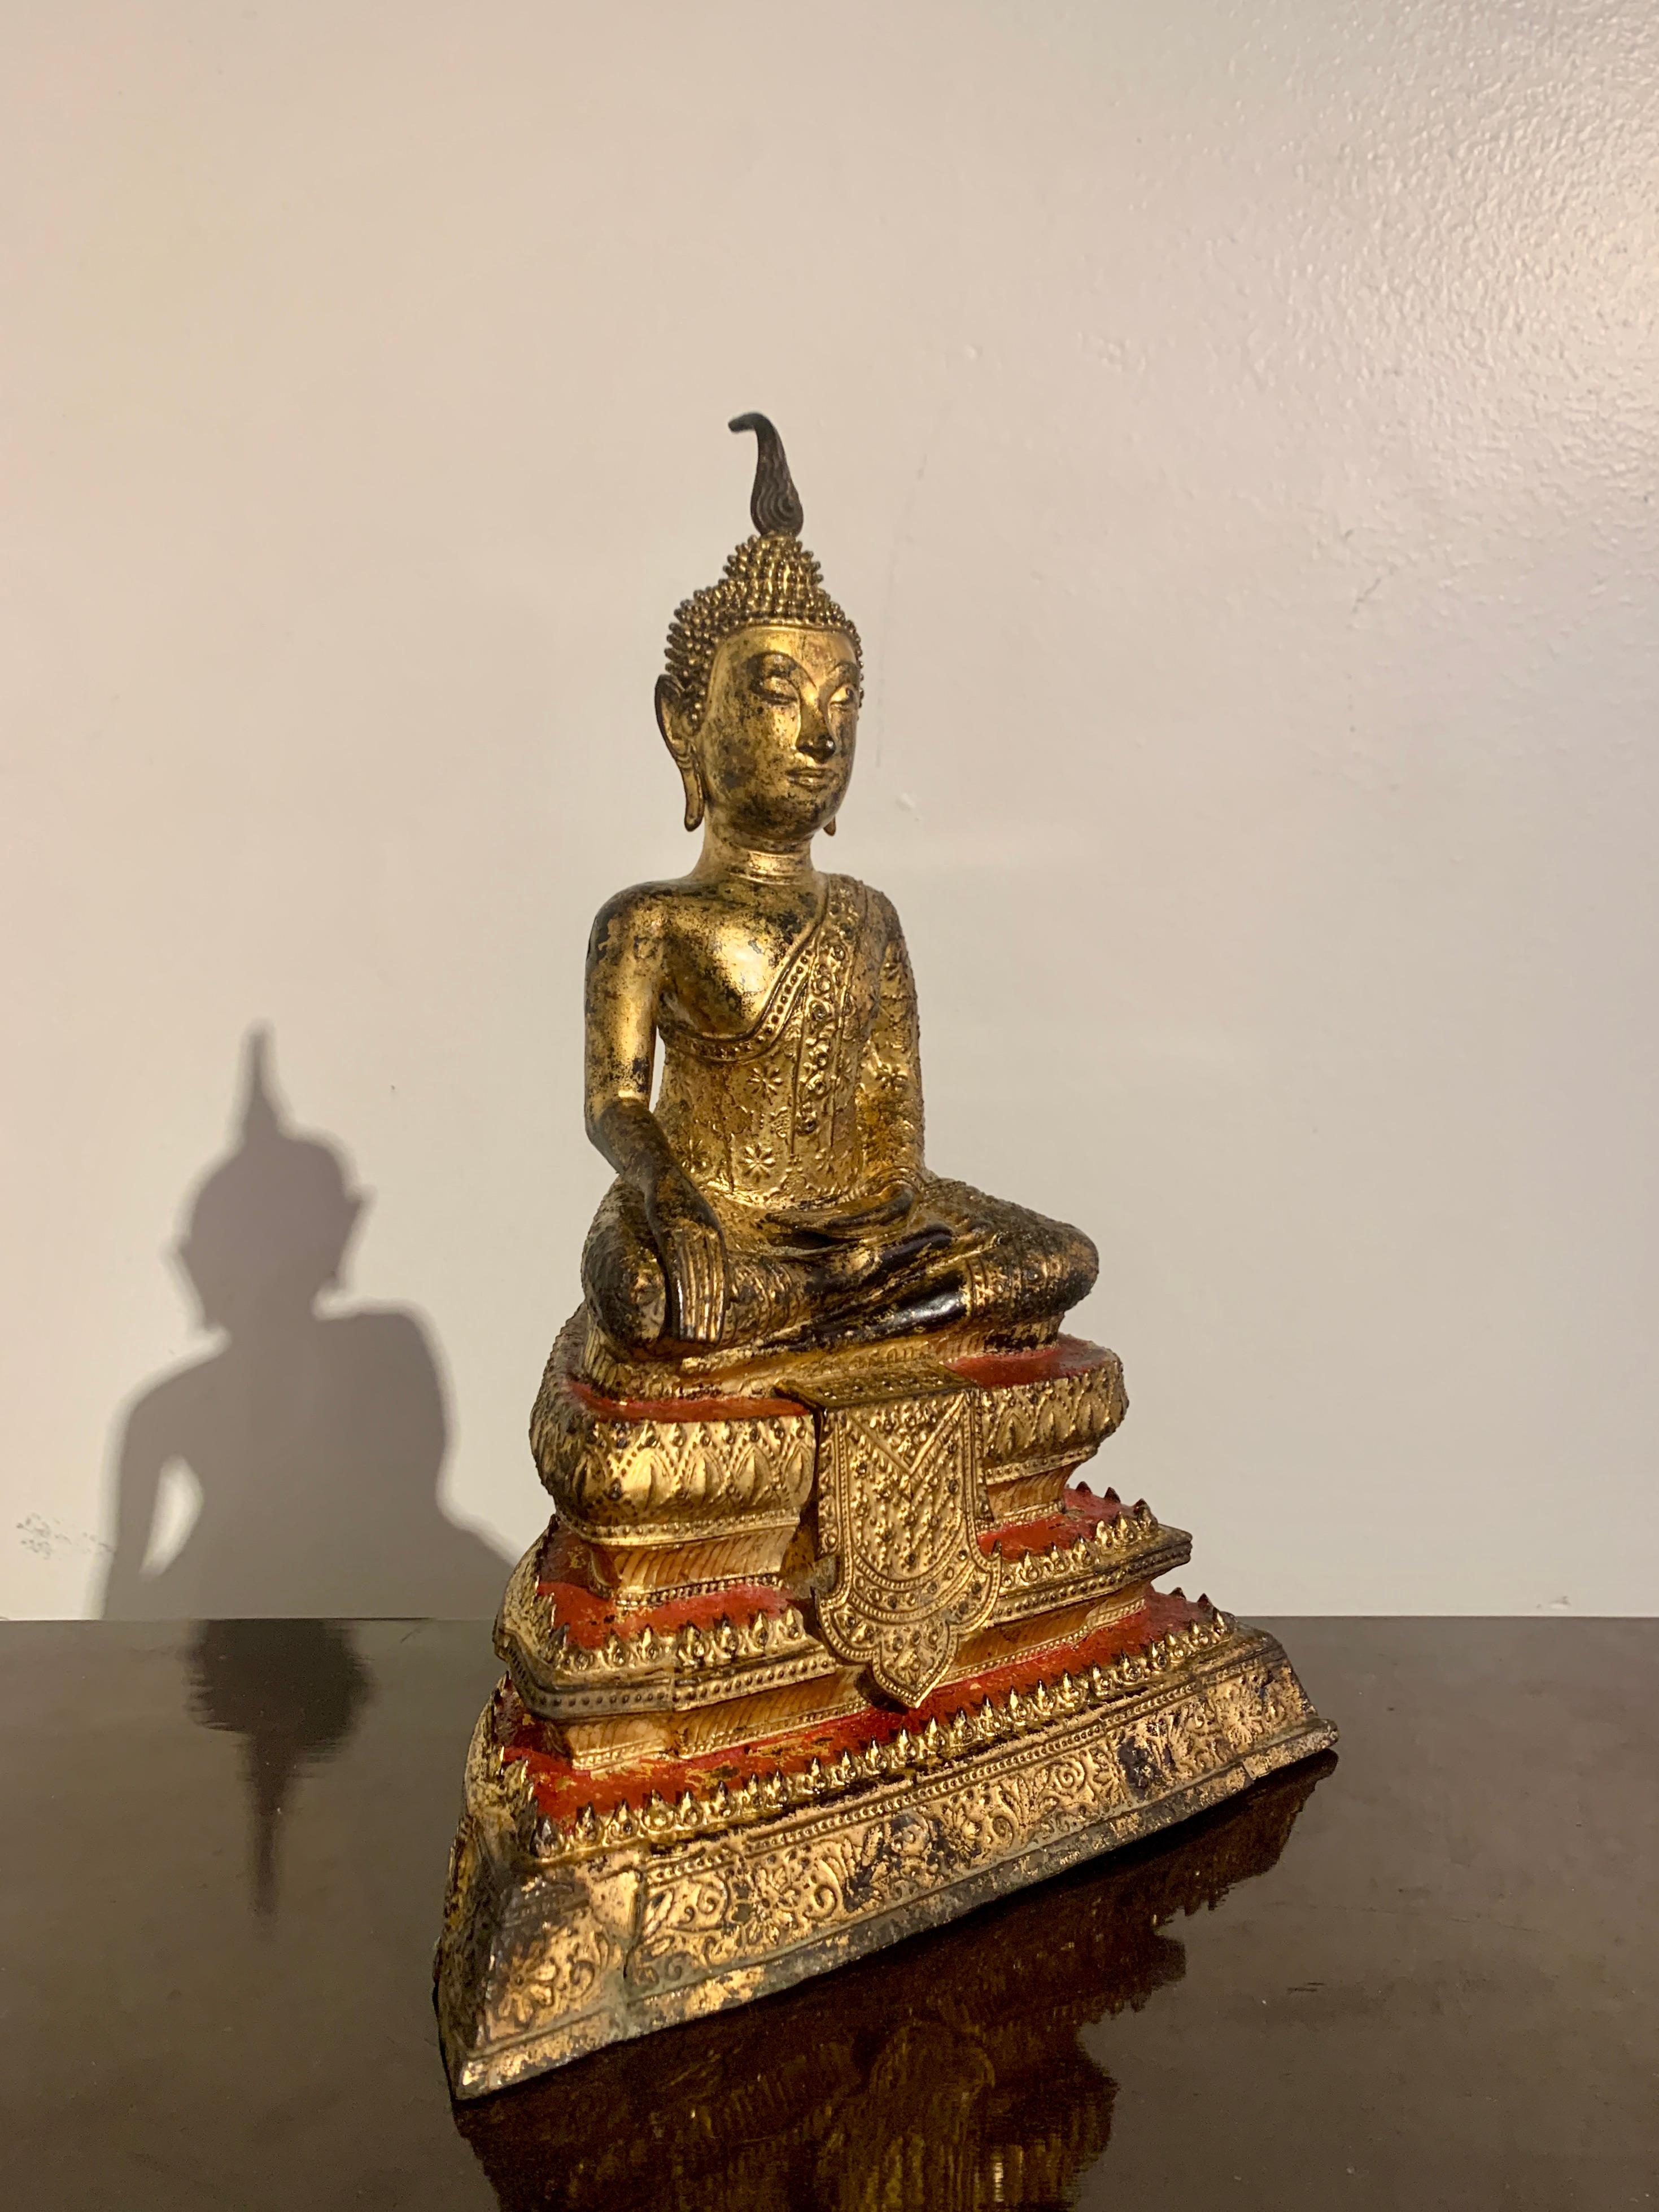 Ravissante figurine thaïlandaise en bronze laqué et doré représentant le Bouddha historique, Shakyamuni, en Maravijaya, période Rattanakosin, début ou milieu du XIXe siècle, Thaïlande. 

Le Bouddha est représenté dans l'attitude de Maravijaya, la